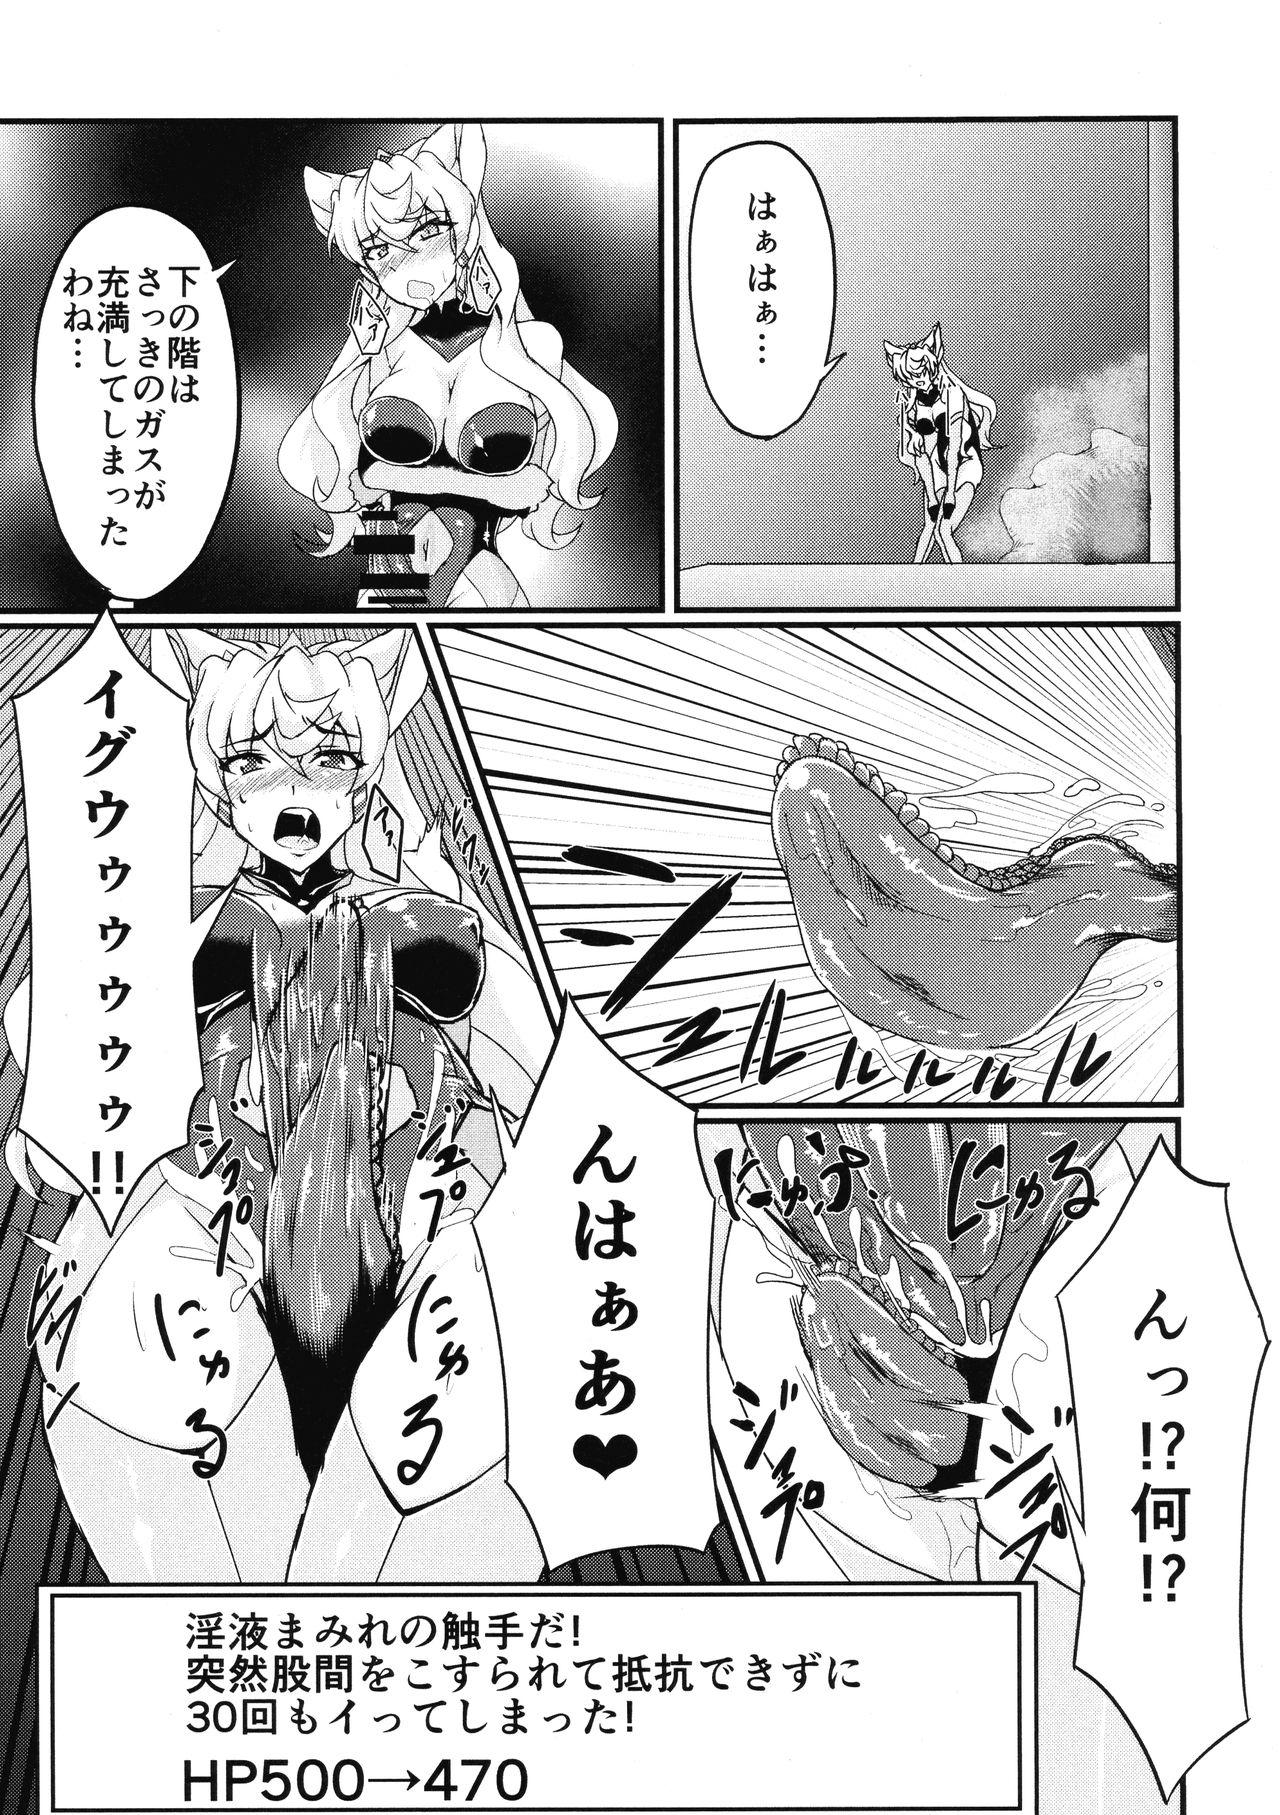 Girlfriend Futanari Maria Ero Trap Dungeon - Senki zesshou symphogear Cartoon - Page 5